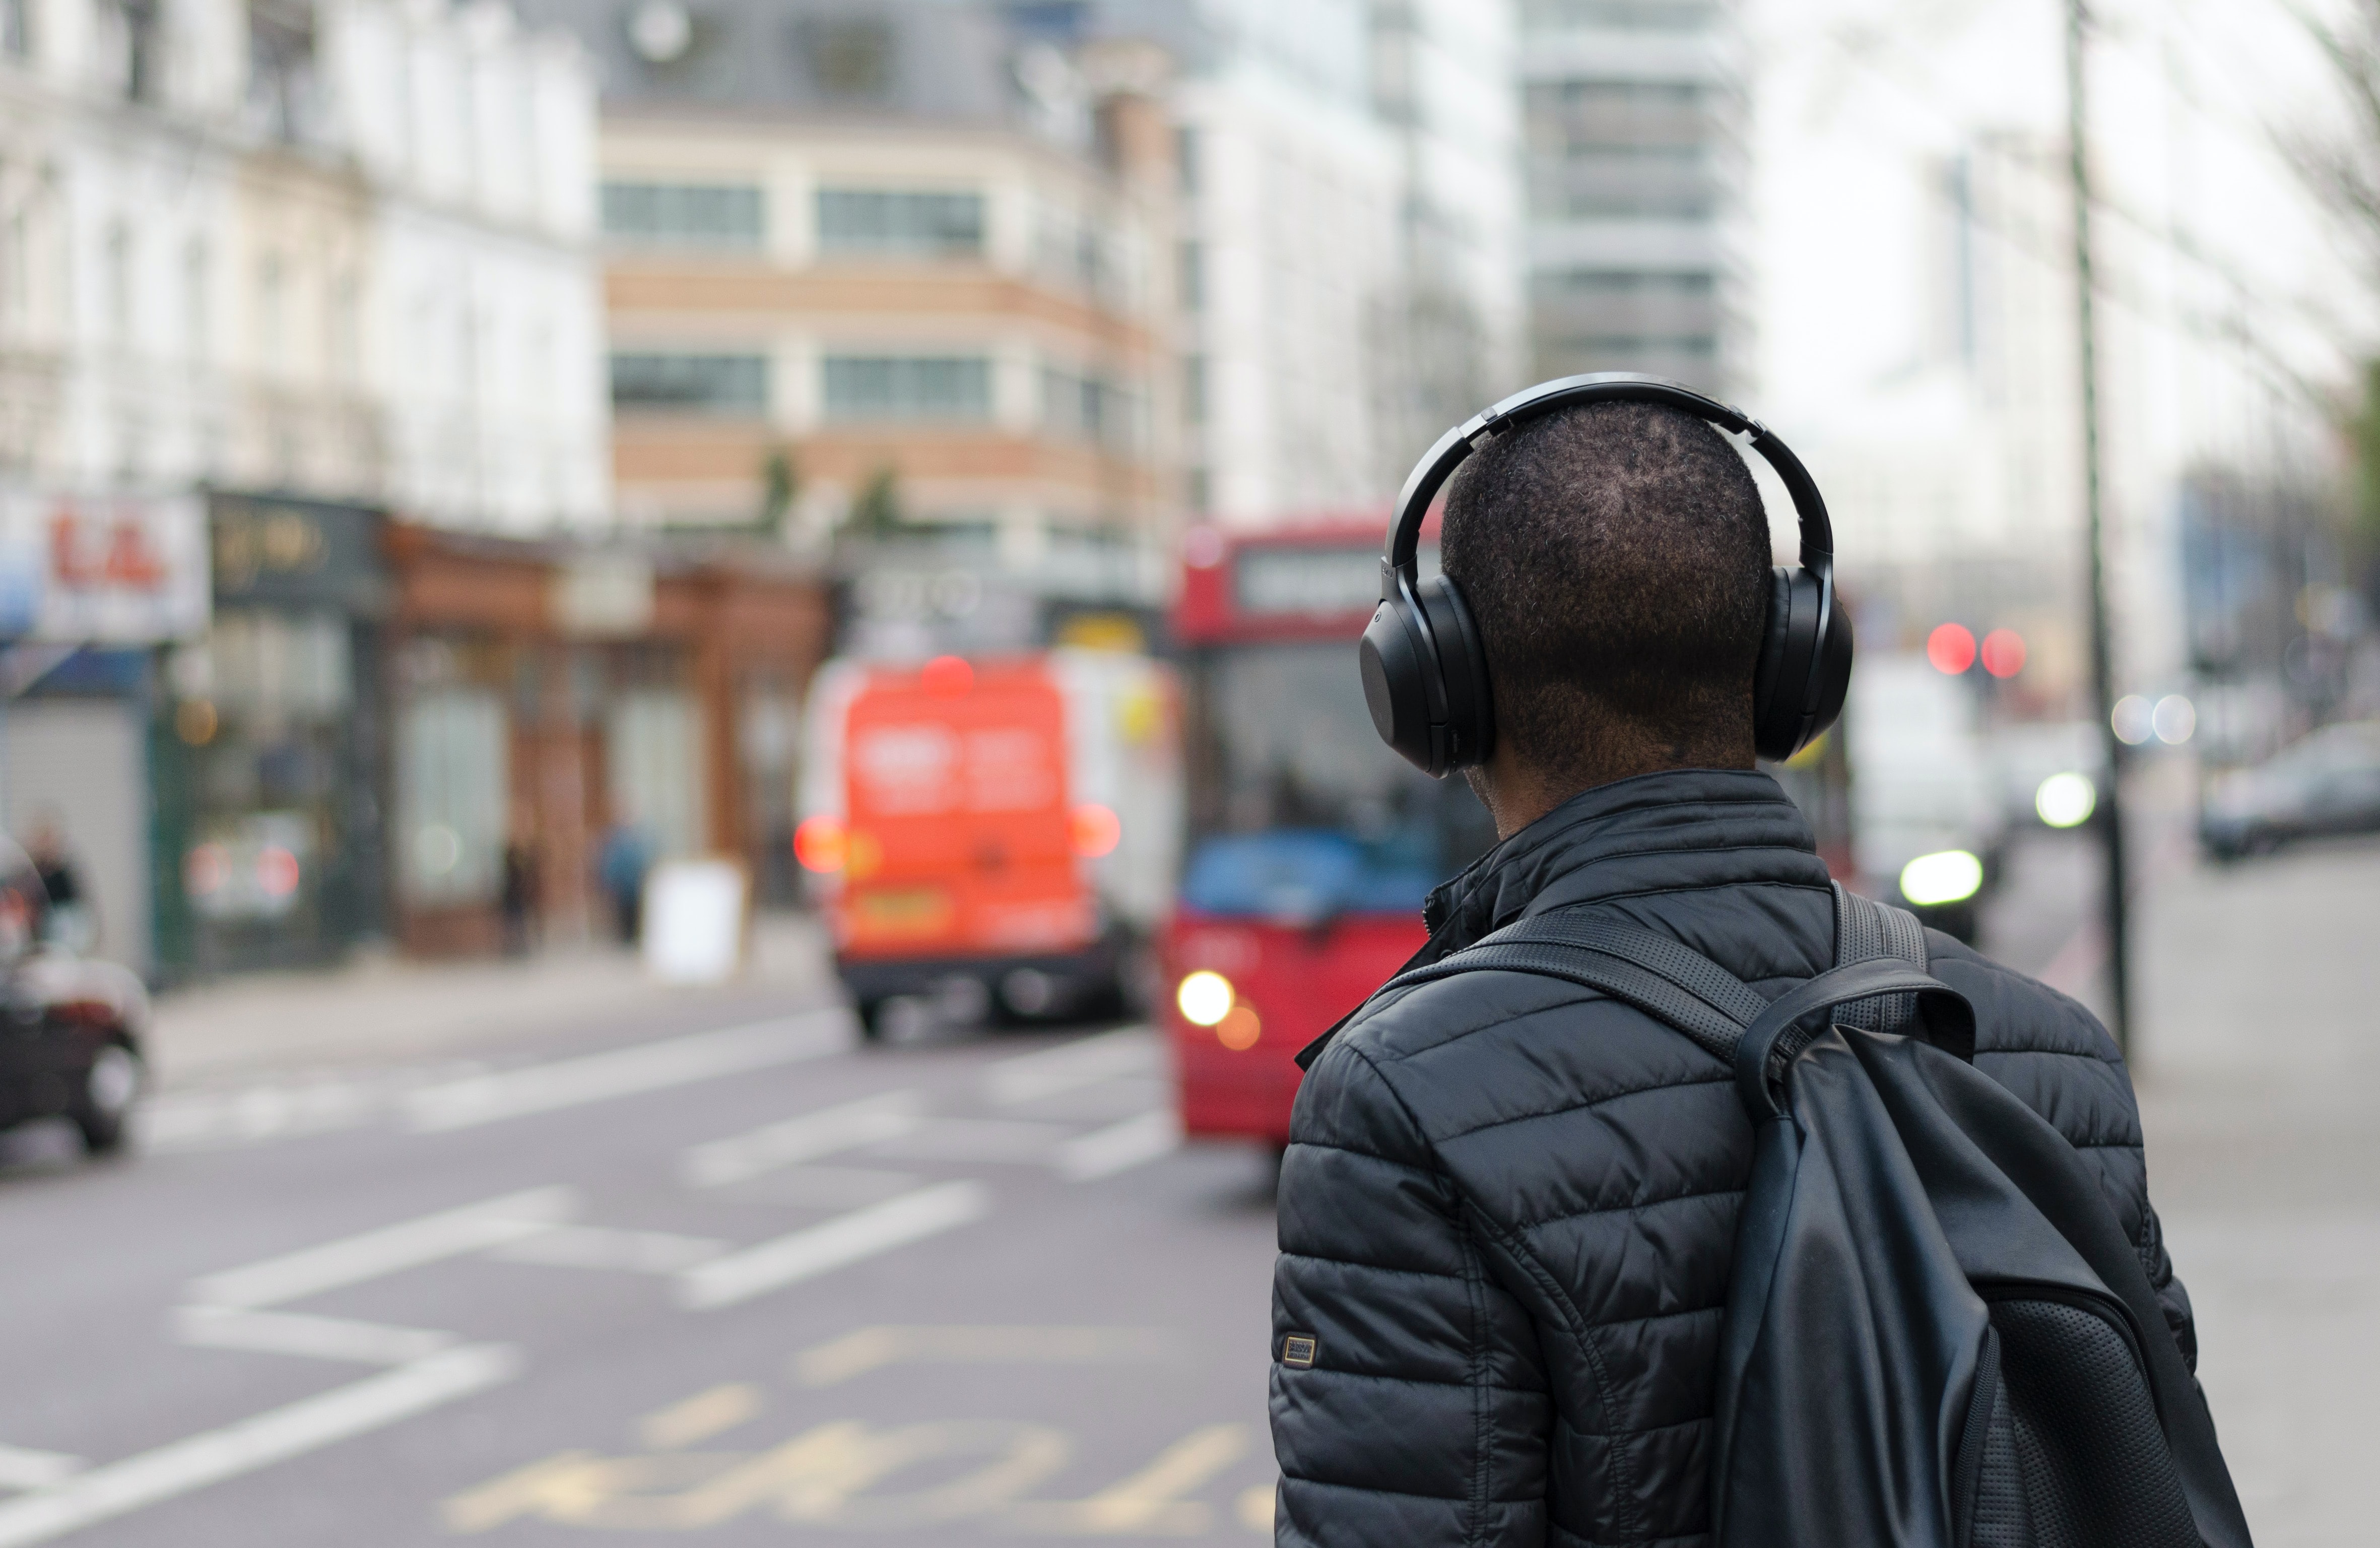 La OMS subraya la “necesidad de intensificar rápidamente la prevención y el tratamiento de la pérdida auditiva”. (Foto Prensa Libre: Unsplash)

